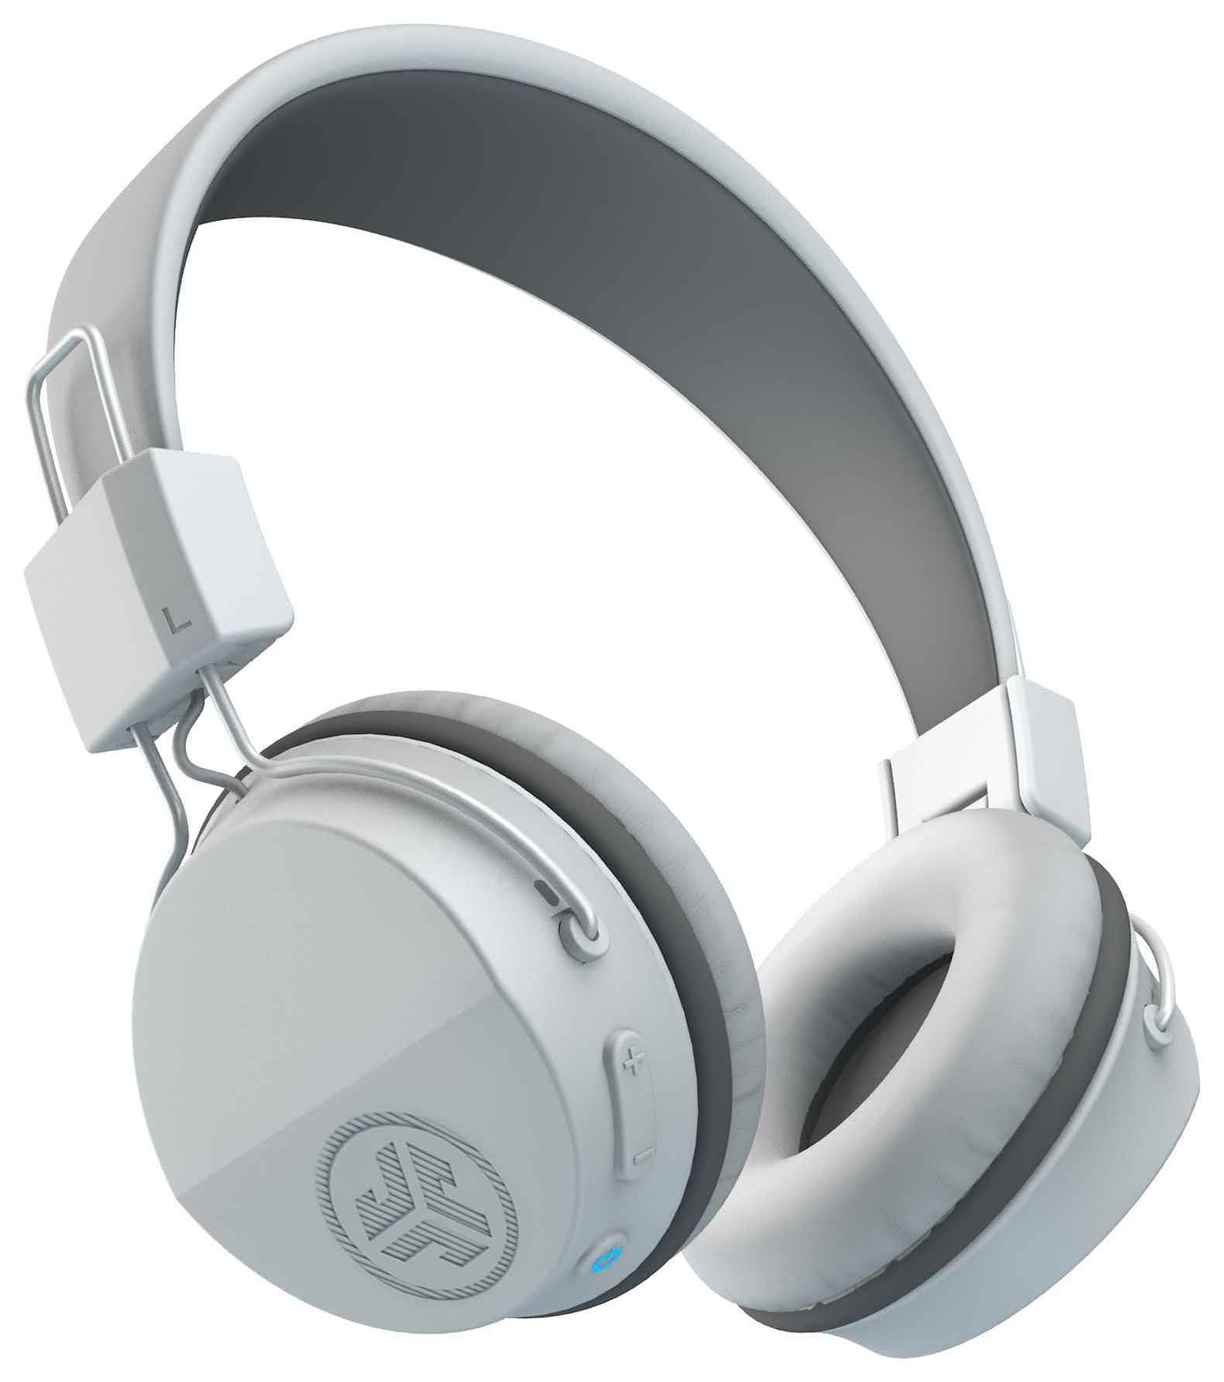 jlab bluetooth headphones